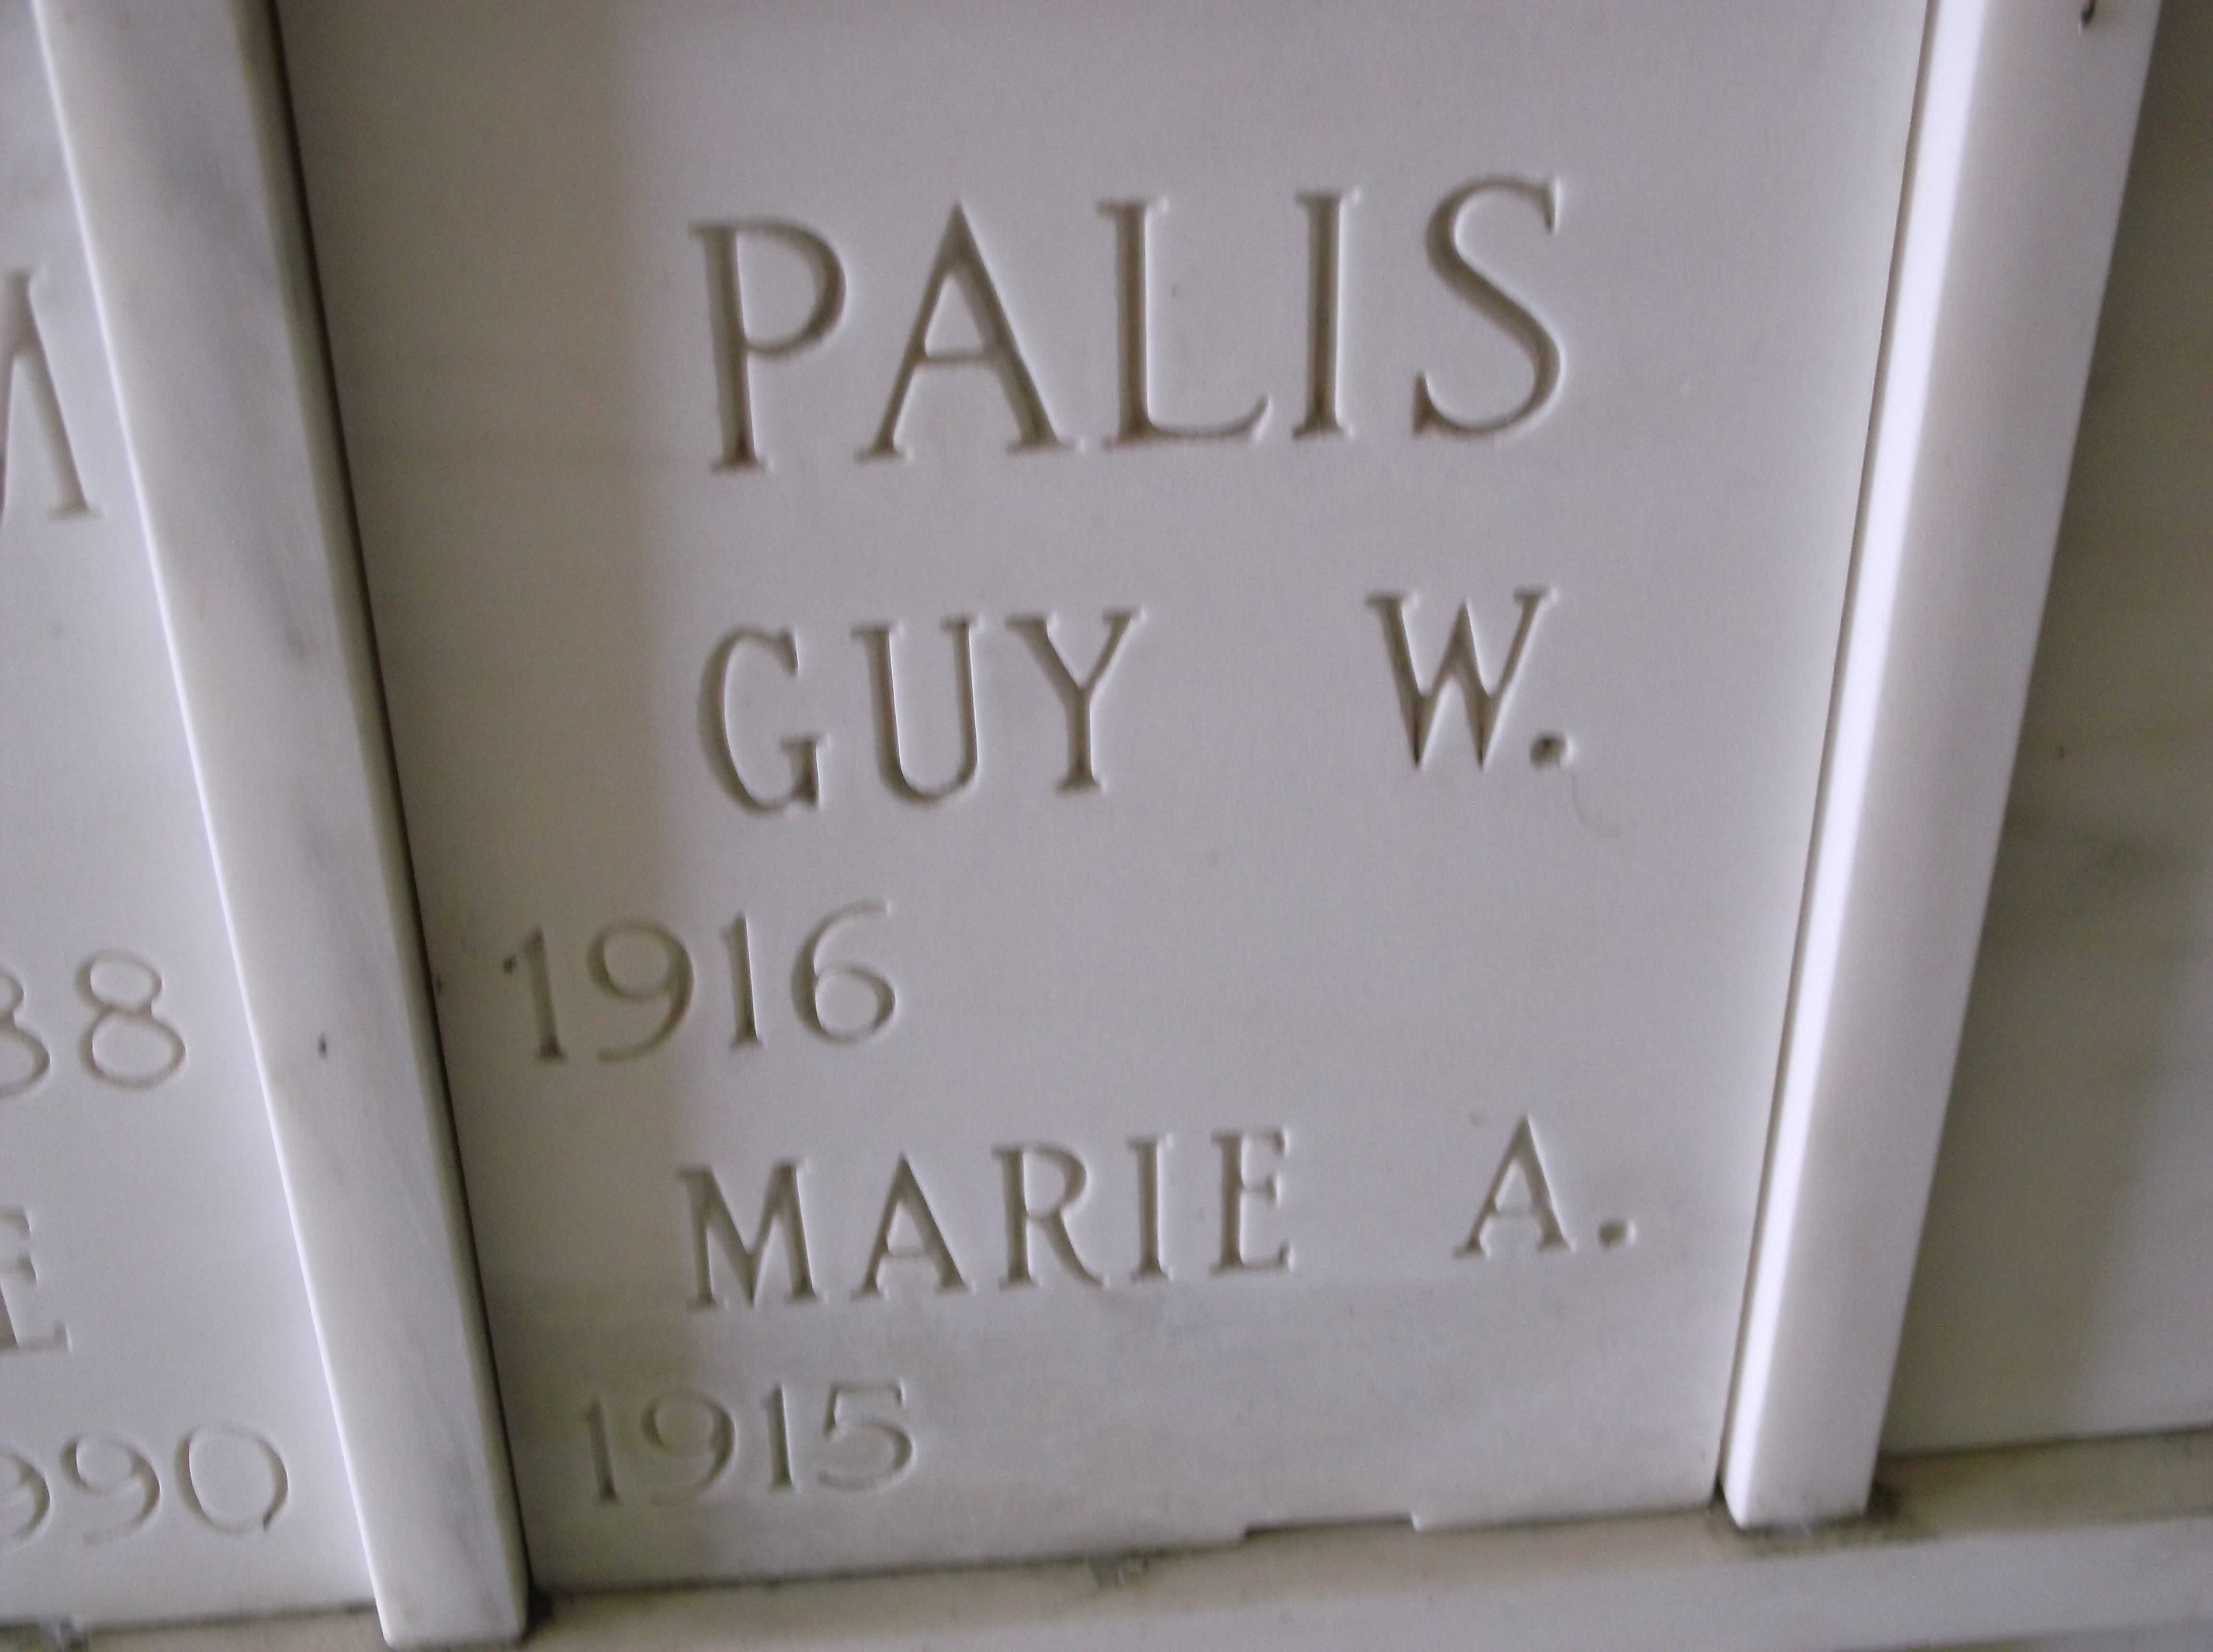 Guy W Palis